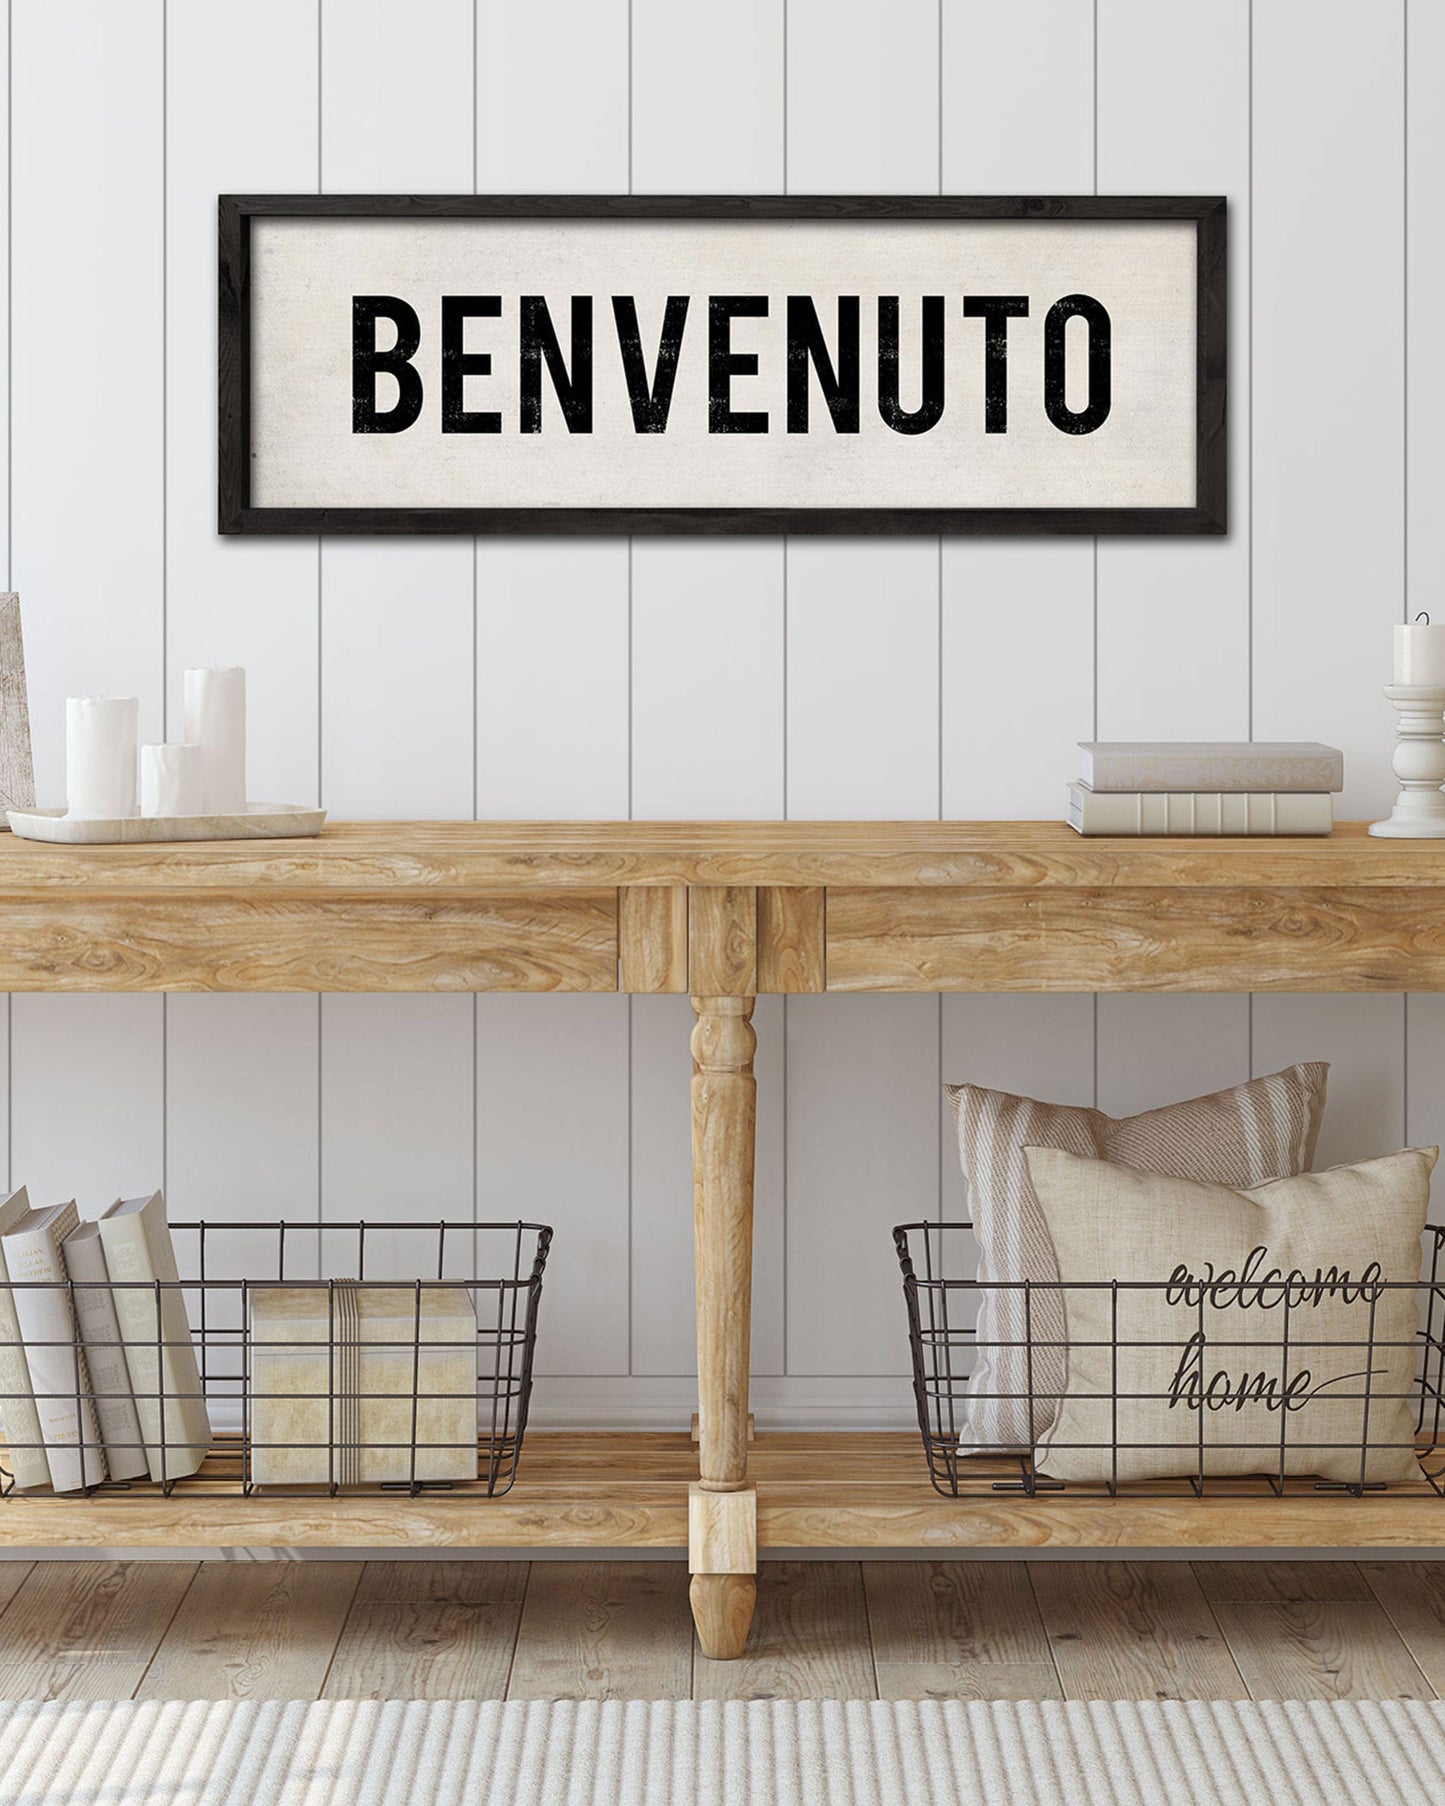 Benvenuto Italian Welcome Sign, Rustic Farmhouse Decor - Transit Design